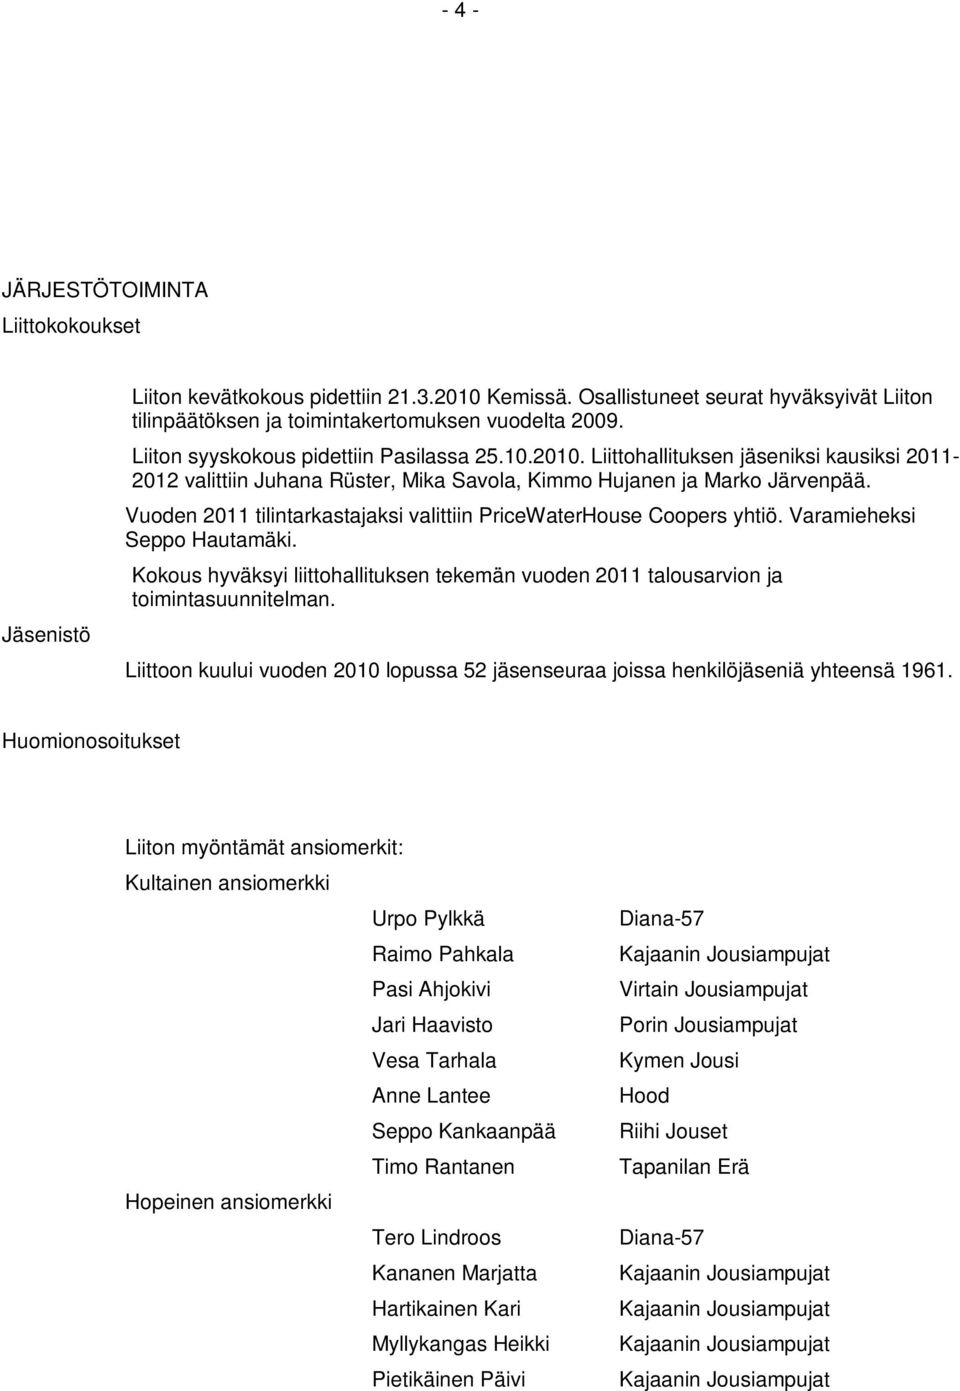 Vuoden 2011 tilintarkastajaksi valittiin PriceWaterHouse Coopers yhtiö. Varamieheksi Seppo Hautamäki. Kokous hyväksyi liittohallituksen tekemän vuoden 2011 talousarvion ja toimintasuunnitelman.